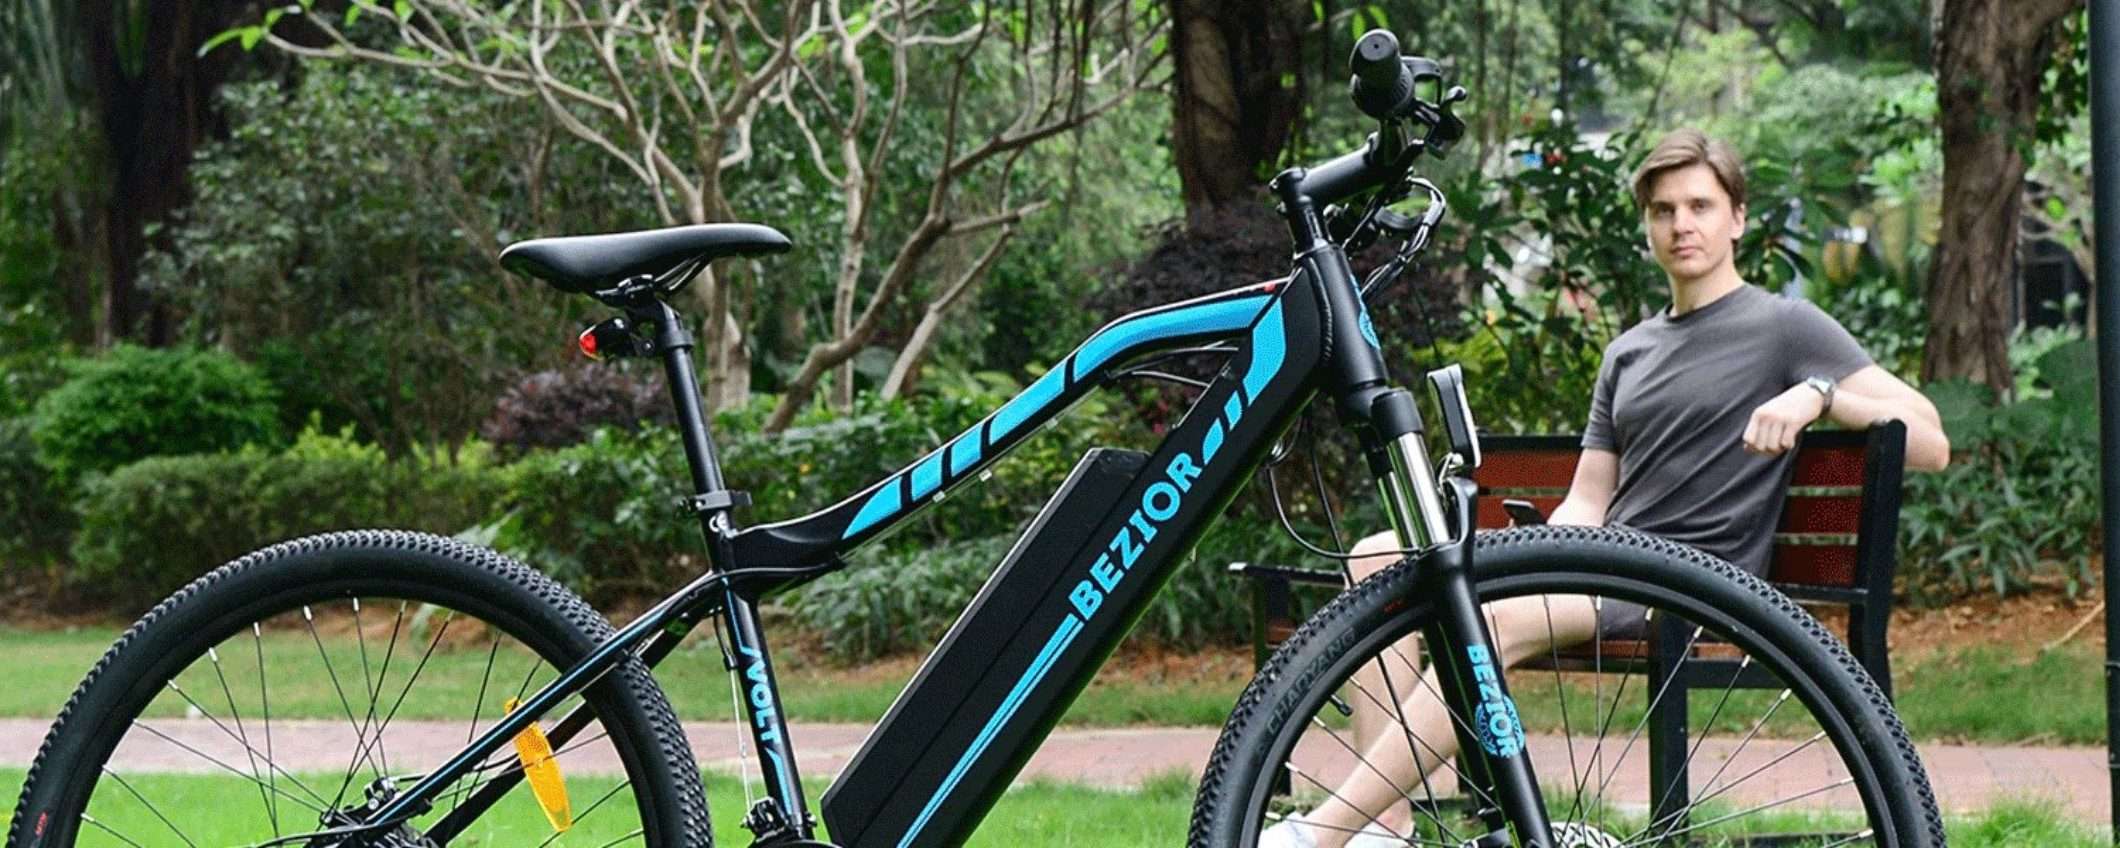 Scegli la tua bicicletta elettrica: ottime offerte su GoGoBest